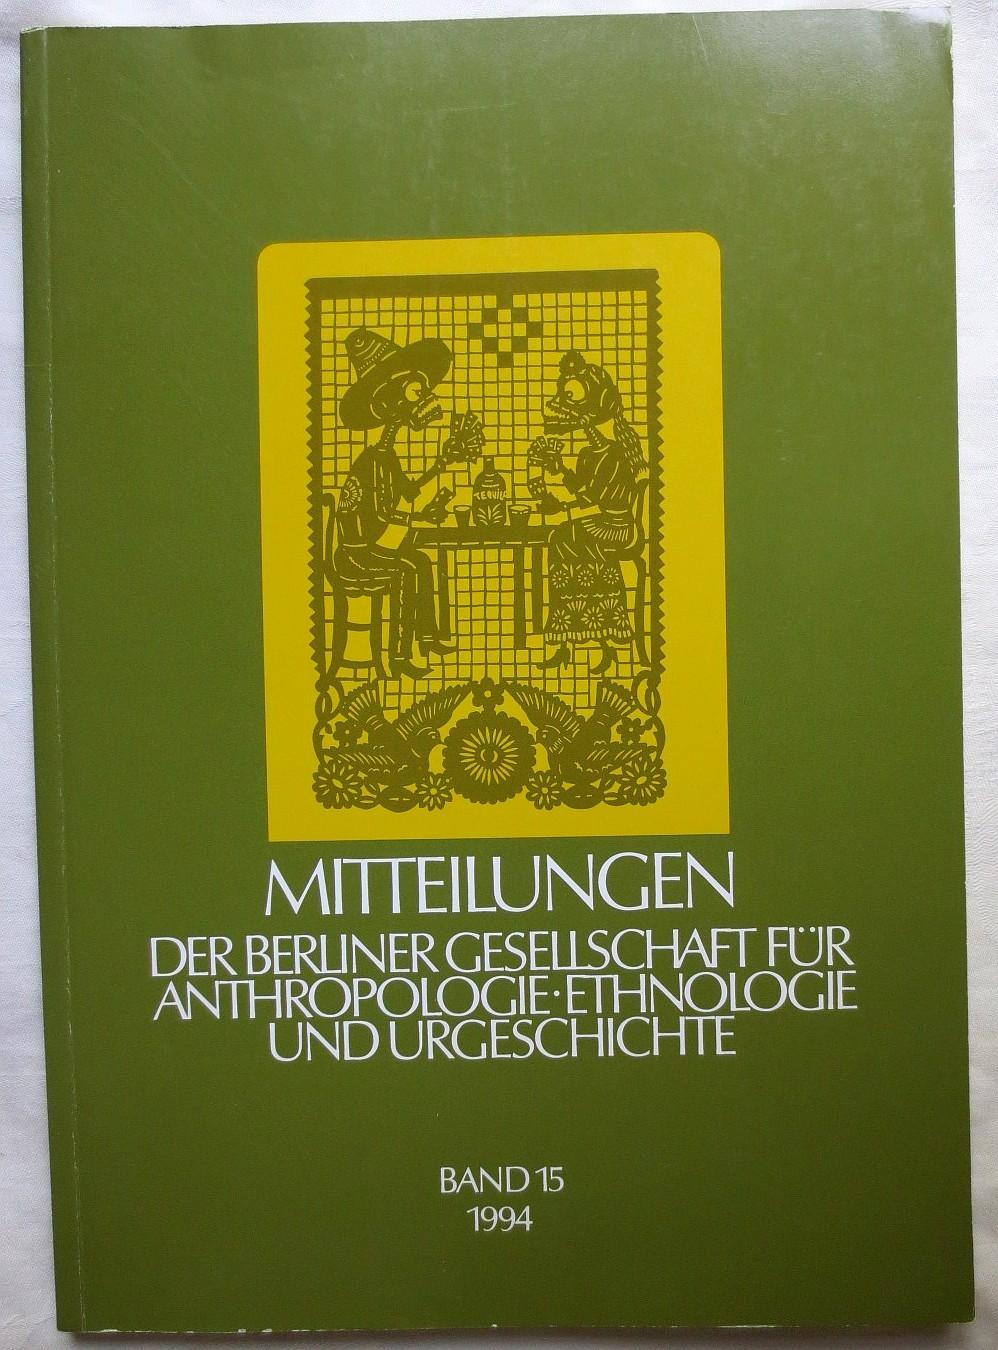 Mitteilungen der Berliner Gesellschaft für Anthropologie, Ethnologie und Urgeschichte, Band 15, 1994 - Hänsel, Bernhard ; Pfeffer, Georg (Hrsg.)